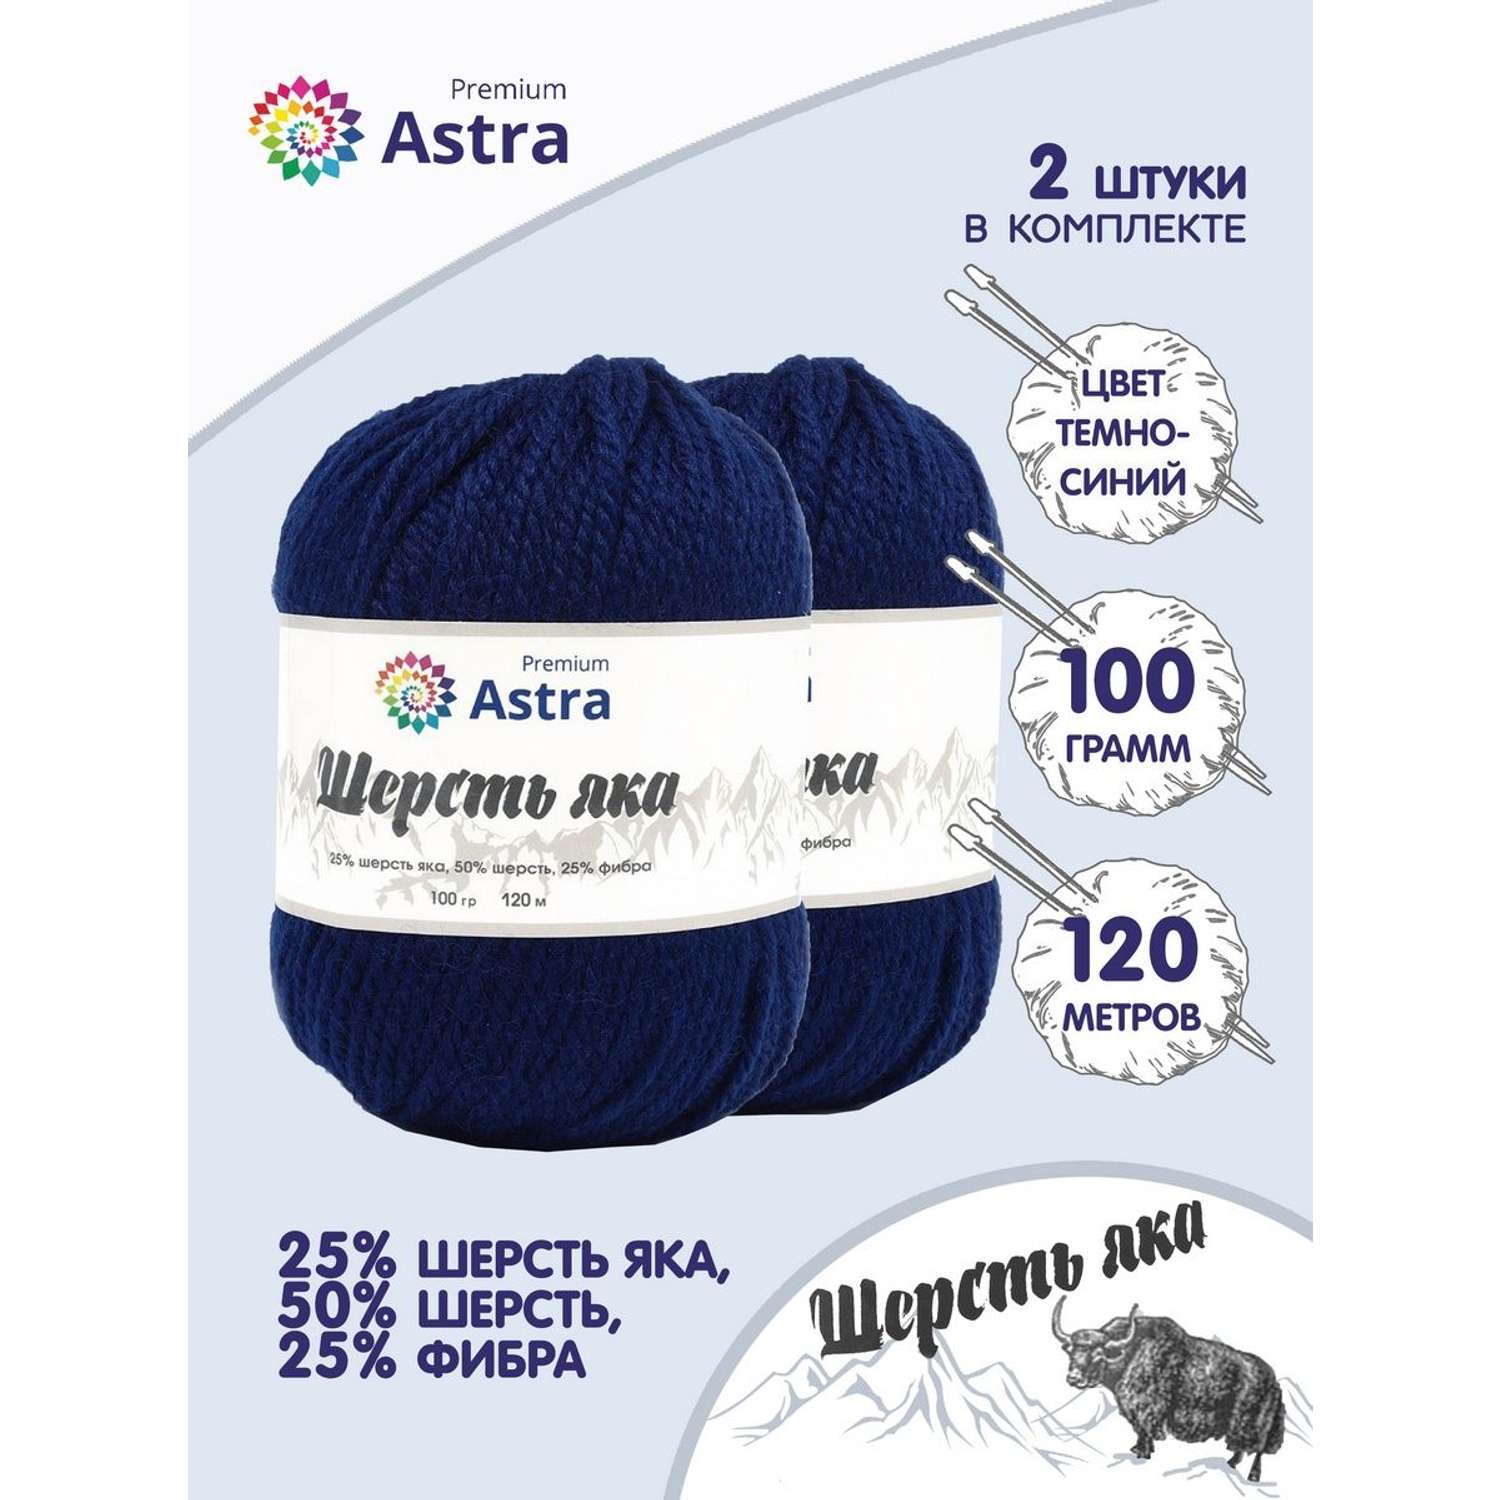 Пряжа Astra Premium Шерсть яка Yak wool теплая мягкая 100 г 120 м 16 темно-синий 2 мотка - фото 1